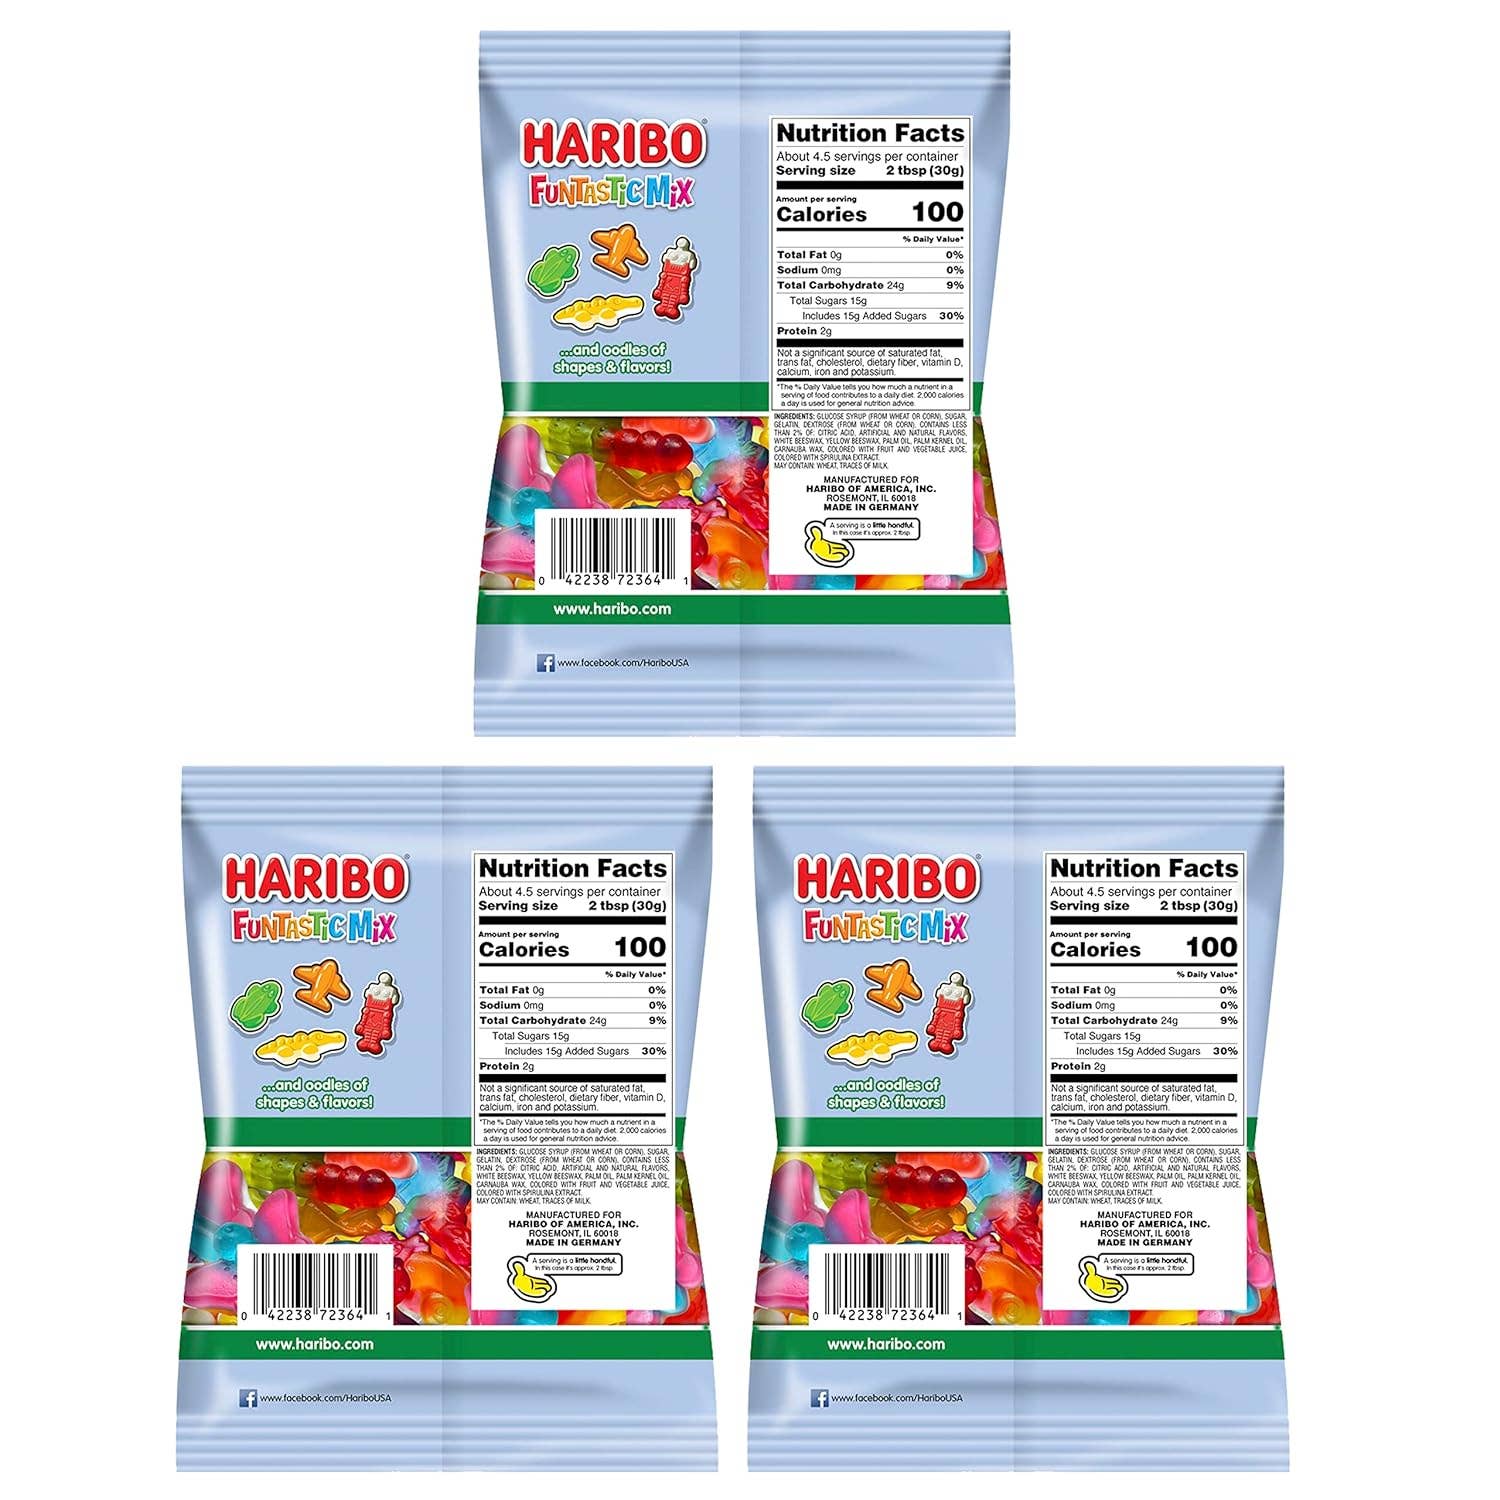 HARIBO Gummi Candy - Funtastic Mix 5 oz. bag (Pack of 12) ($2.25/Unit)